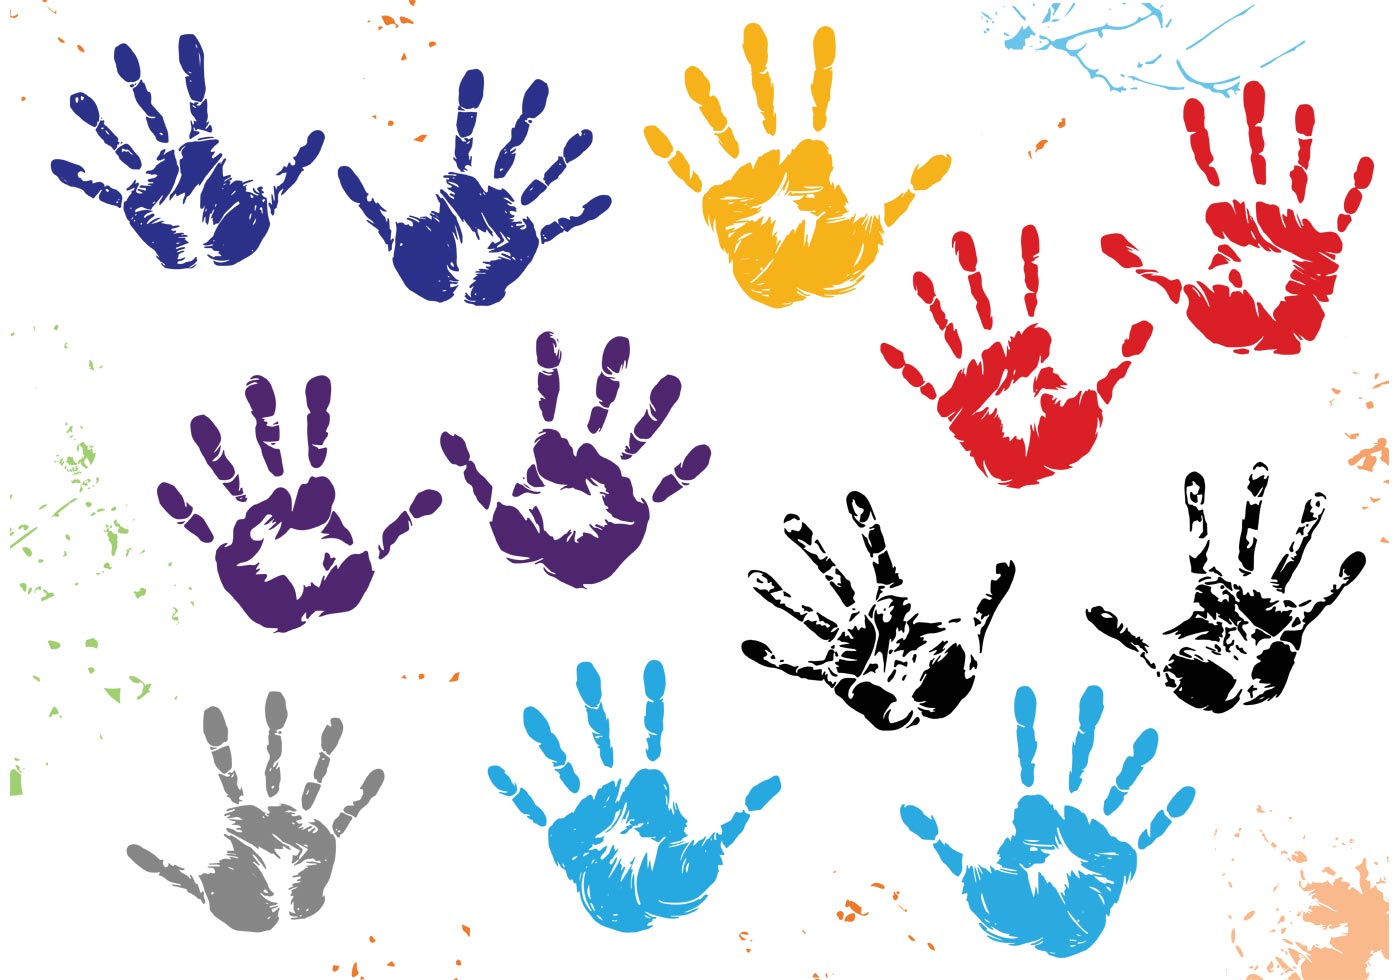 Child Hand Print Vectors - Download Free Vector Art, Stock ...